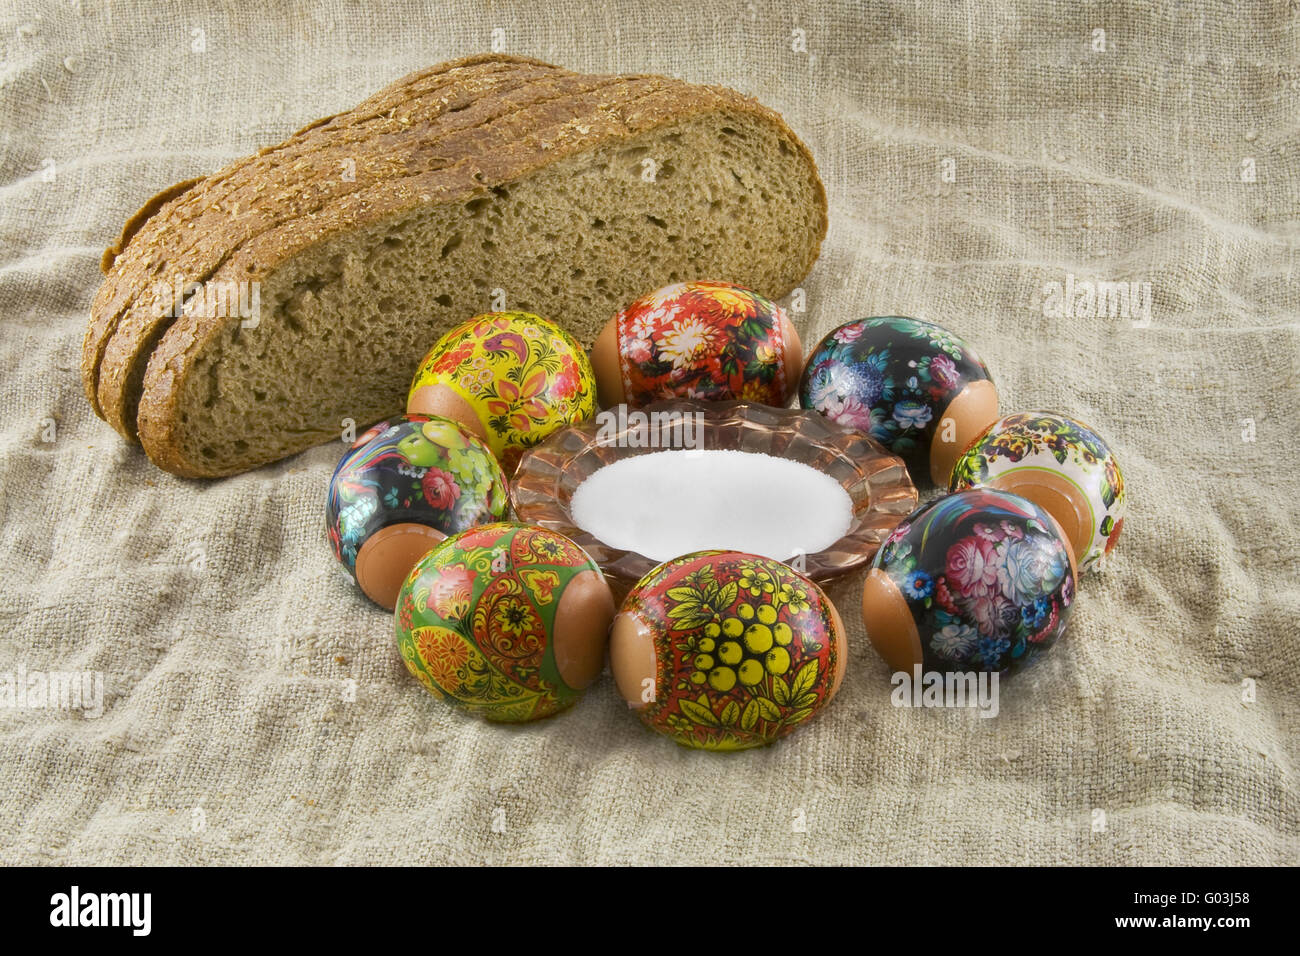 Viele frische ländliche dekorierte Ostereier liegend in einem wattled Körbchen in der Nähe von frischem Brot und Salzstreuer auf ein Tuch aus einem ge Stockfoto